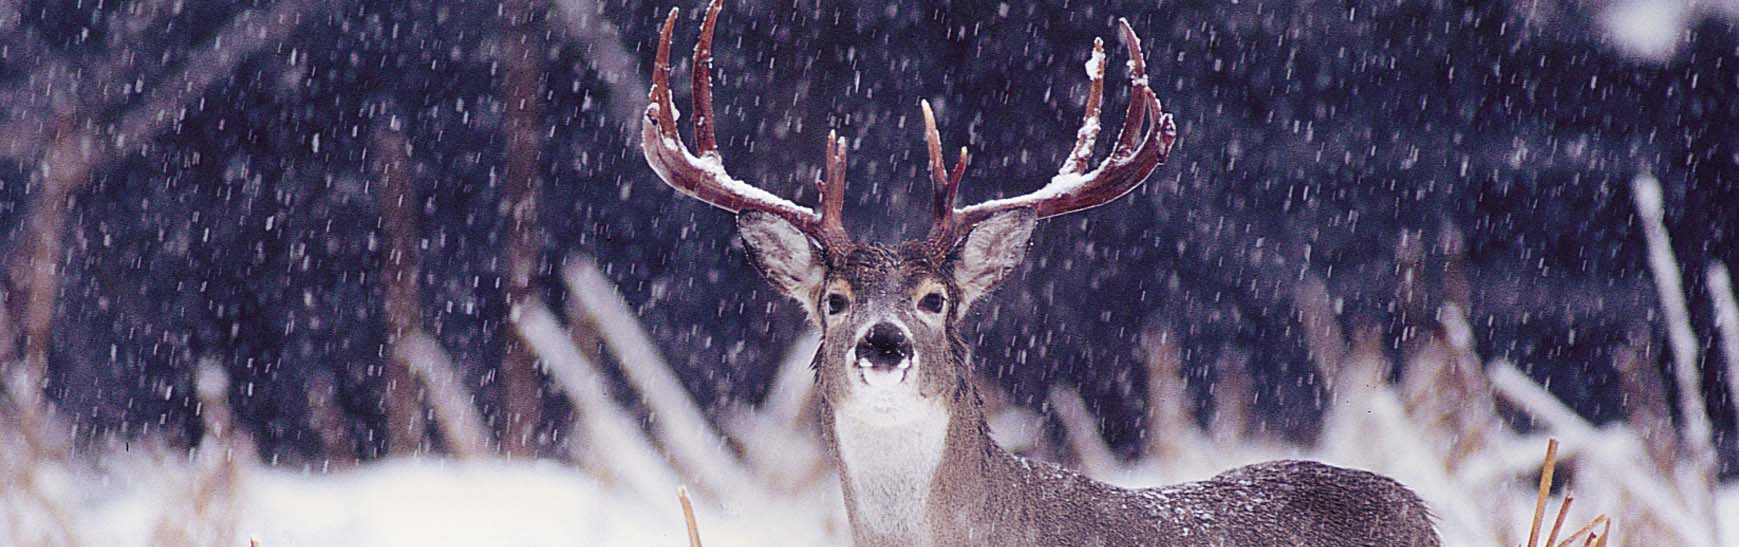 Deer snow